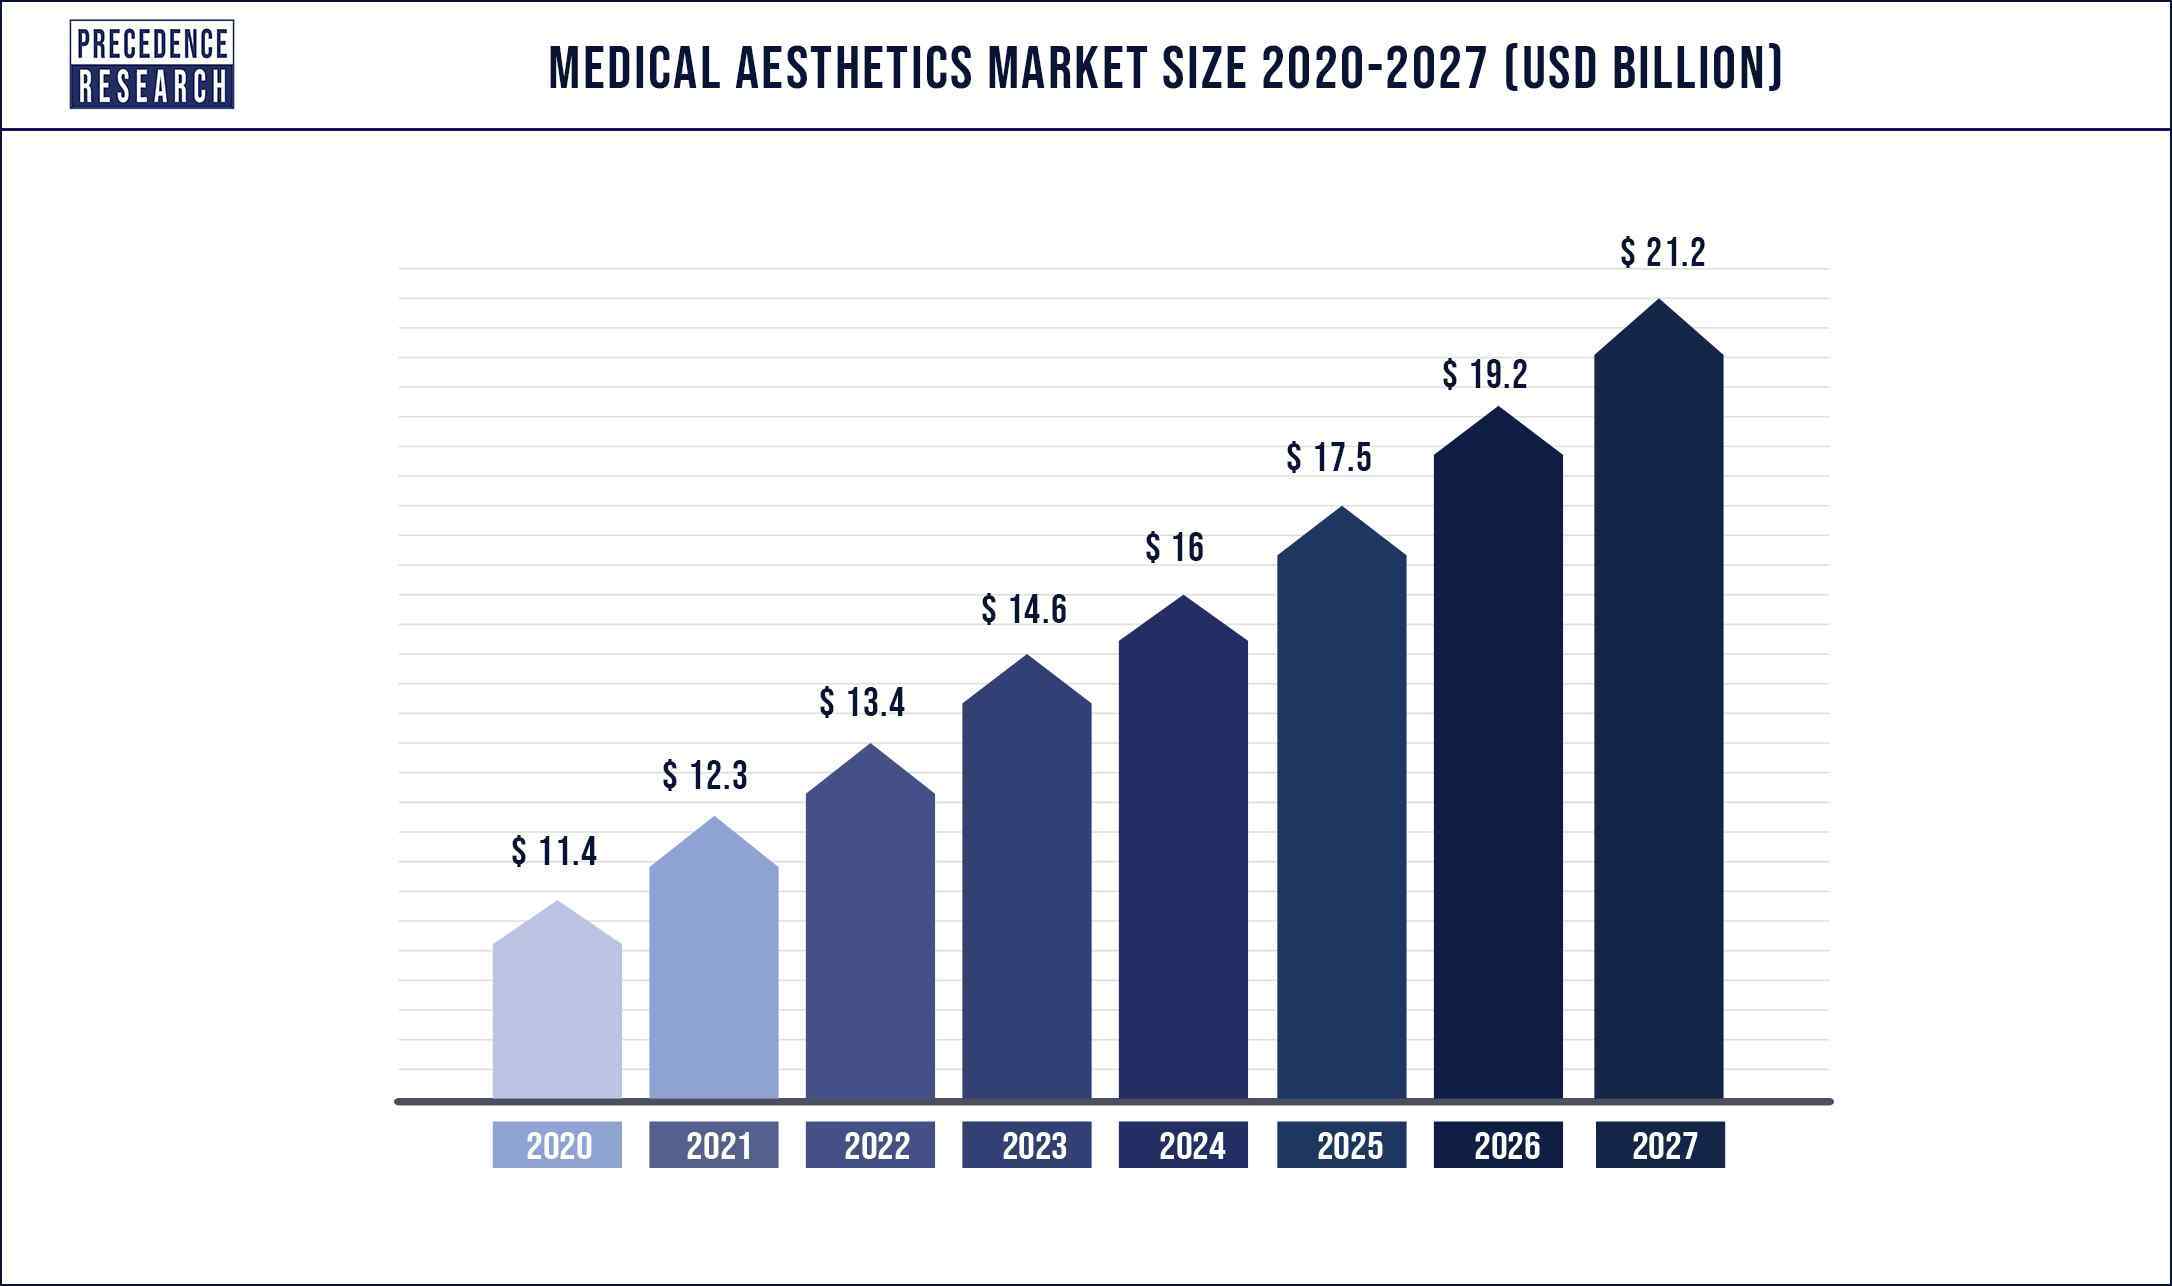 Medical Aesthetics Market Size 2020 to 2027